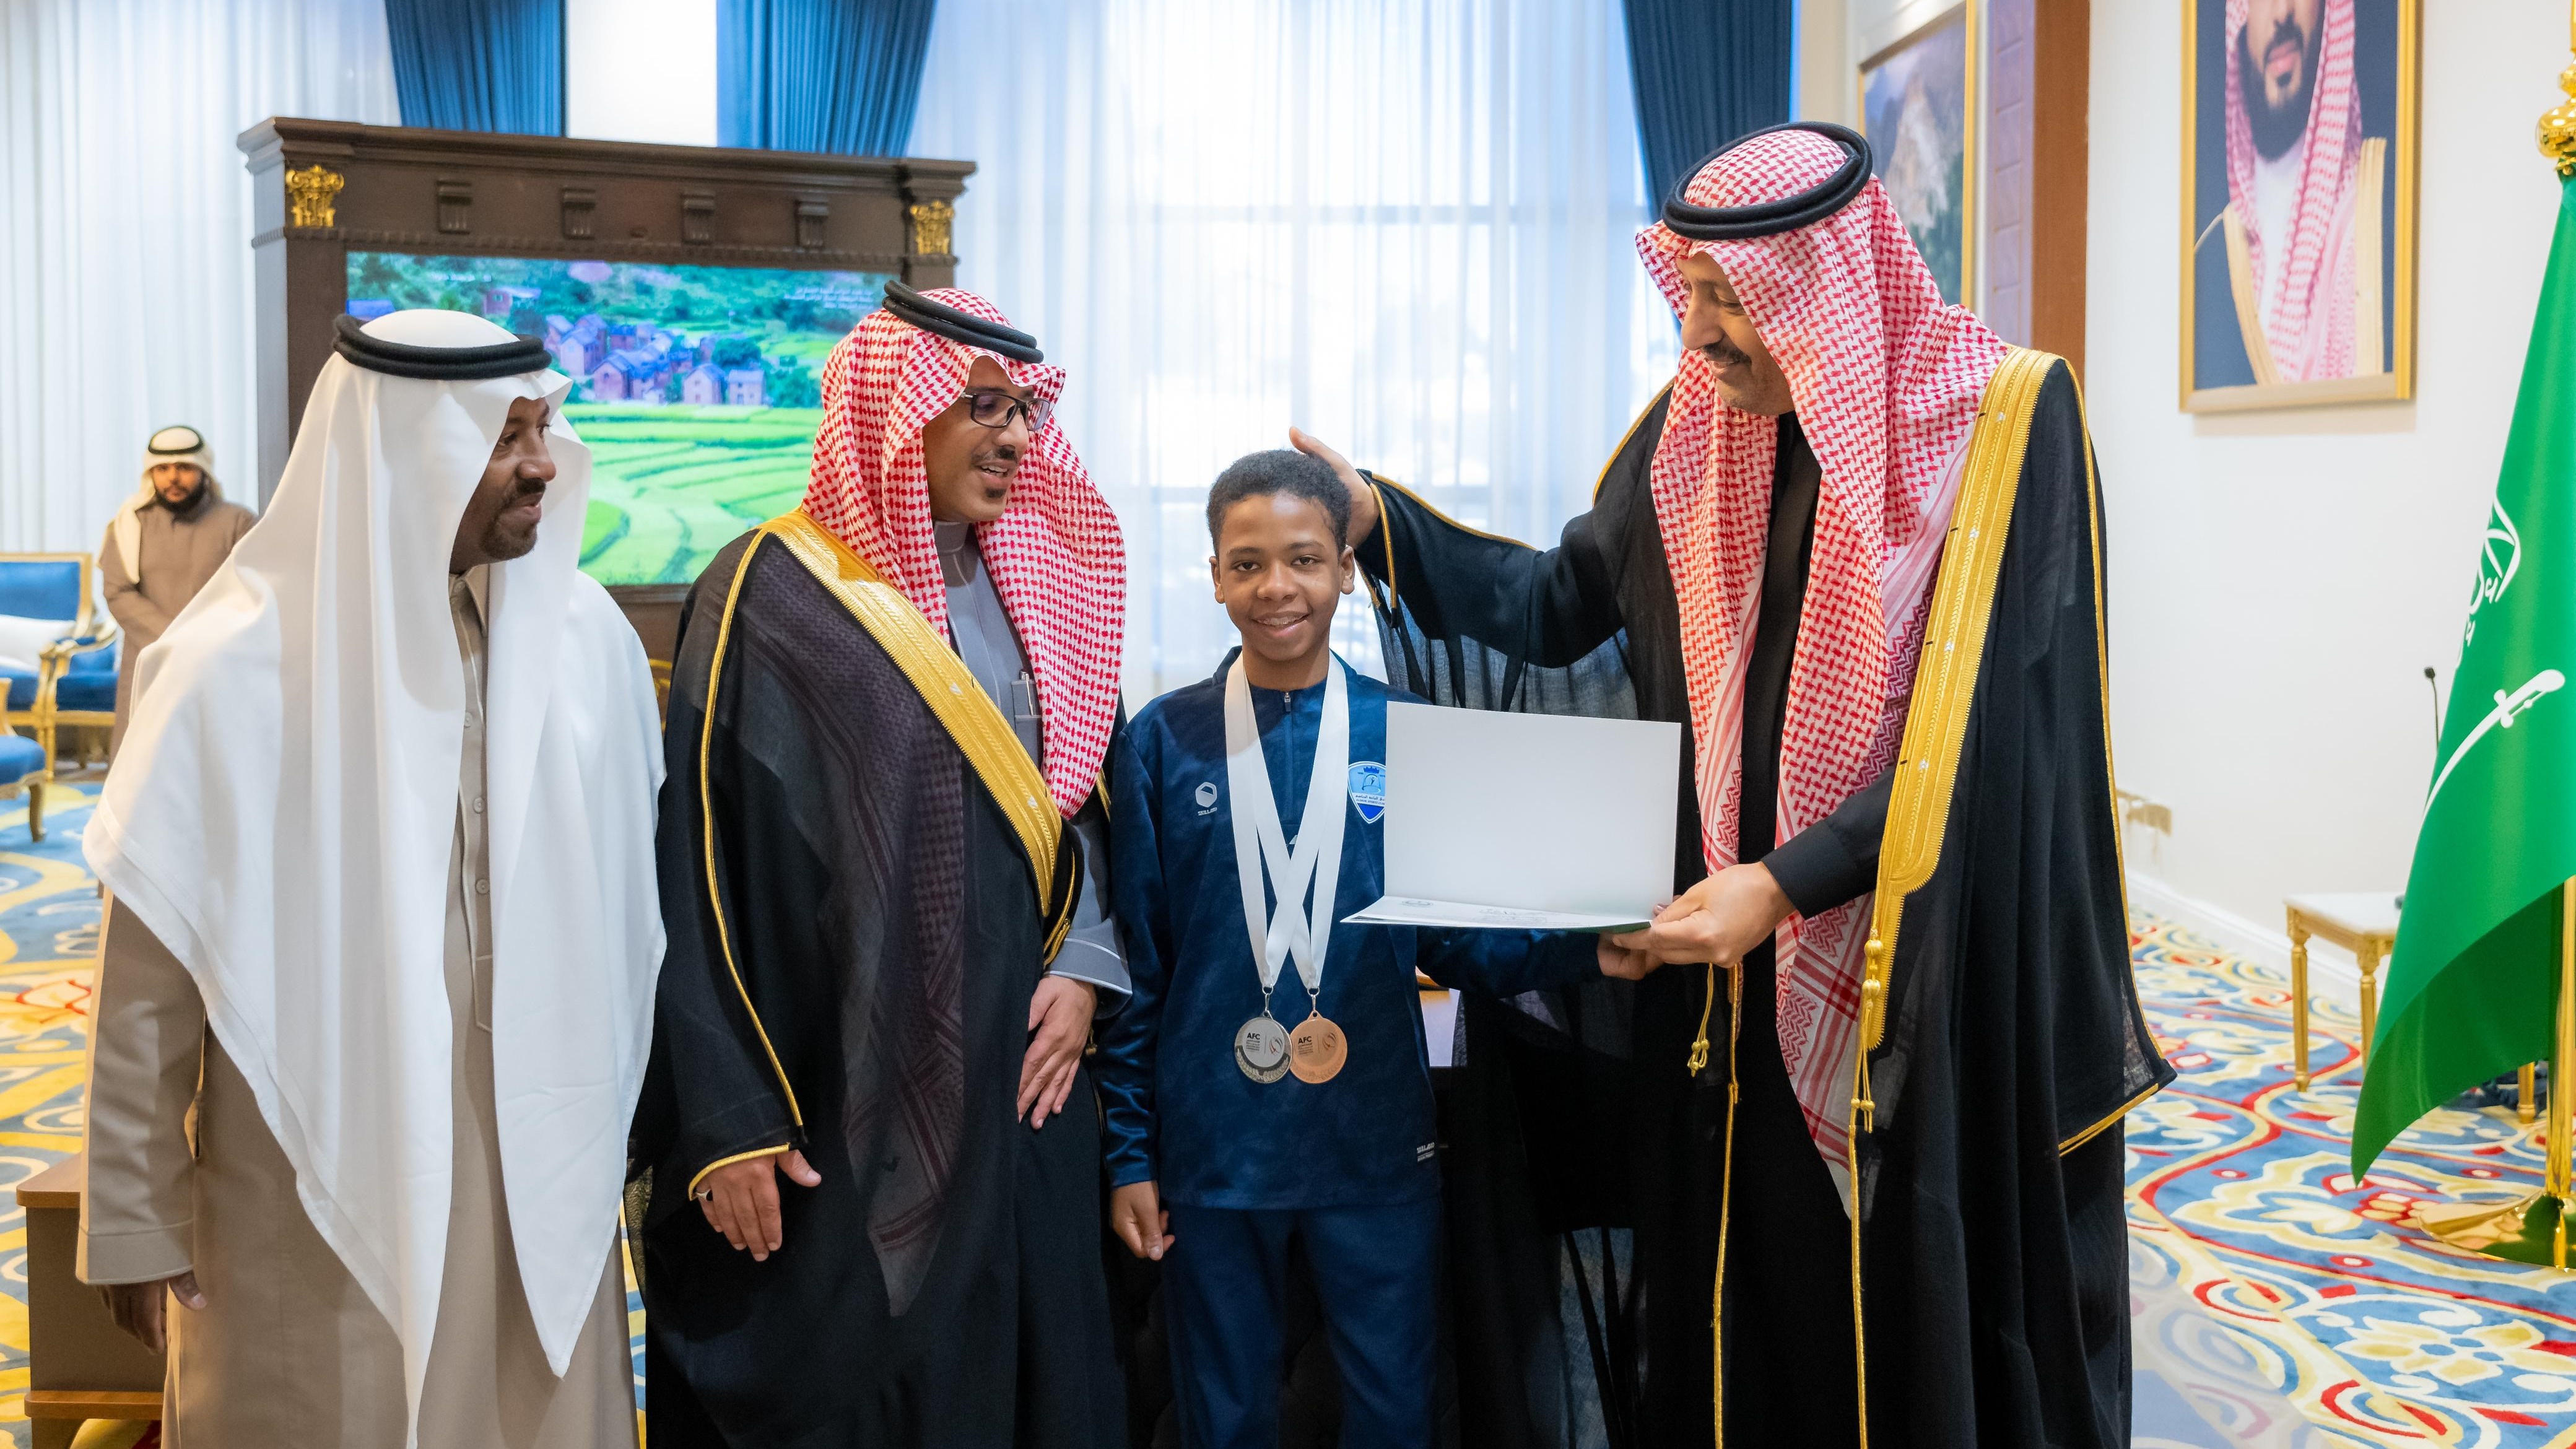 سمو أمير منطقة الباحة يستقبل اللاعب مشاري الخمري بعد تحقيقه للميدالية الفضية في البطولة العربية بمملكة البحرين